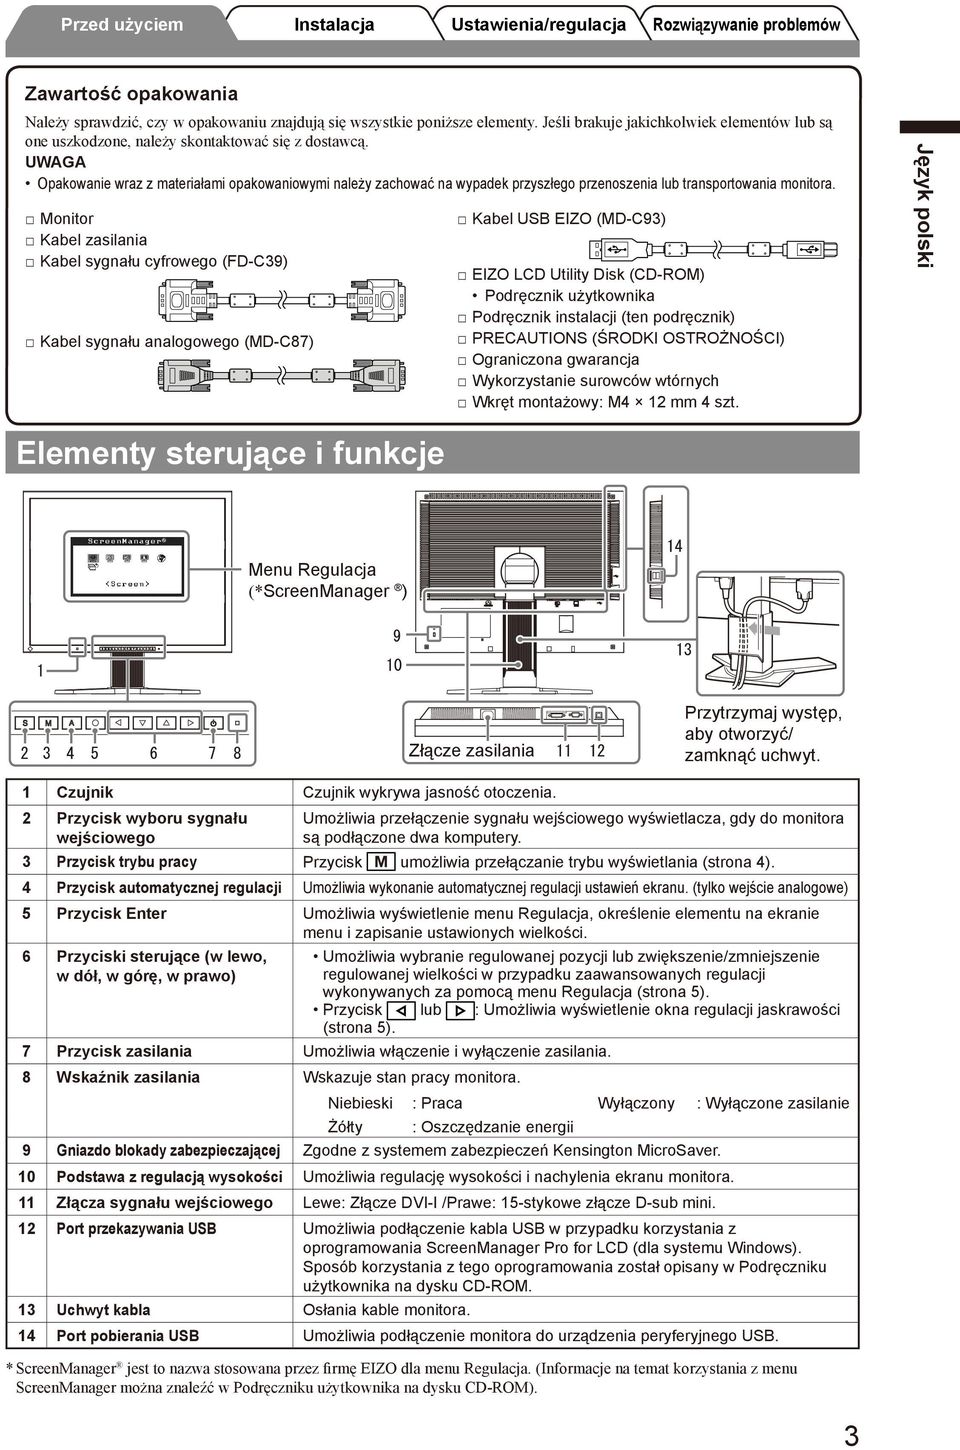 Monitor Kabel zasilania Kabel sygnału cyfrowego (FD-C9) Kabel sygnału analogowego (MD-C87) Kabel USB EIZO (MD-C9) EIZO LCD Utility Disk (CD-ROM) Podręcznik użytkownika Podręcznik instalacji (ten